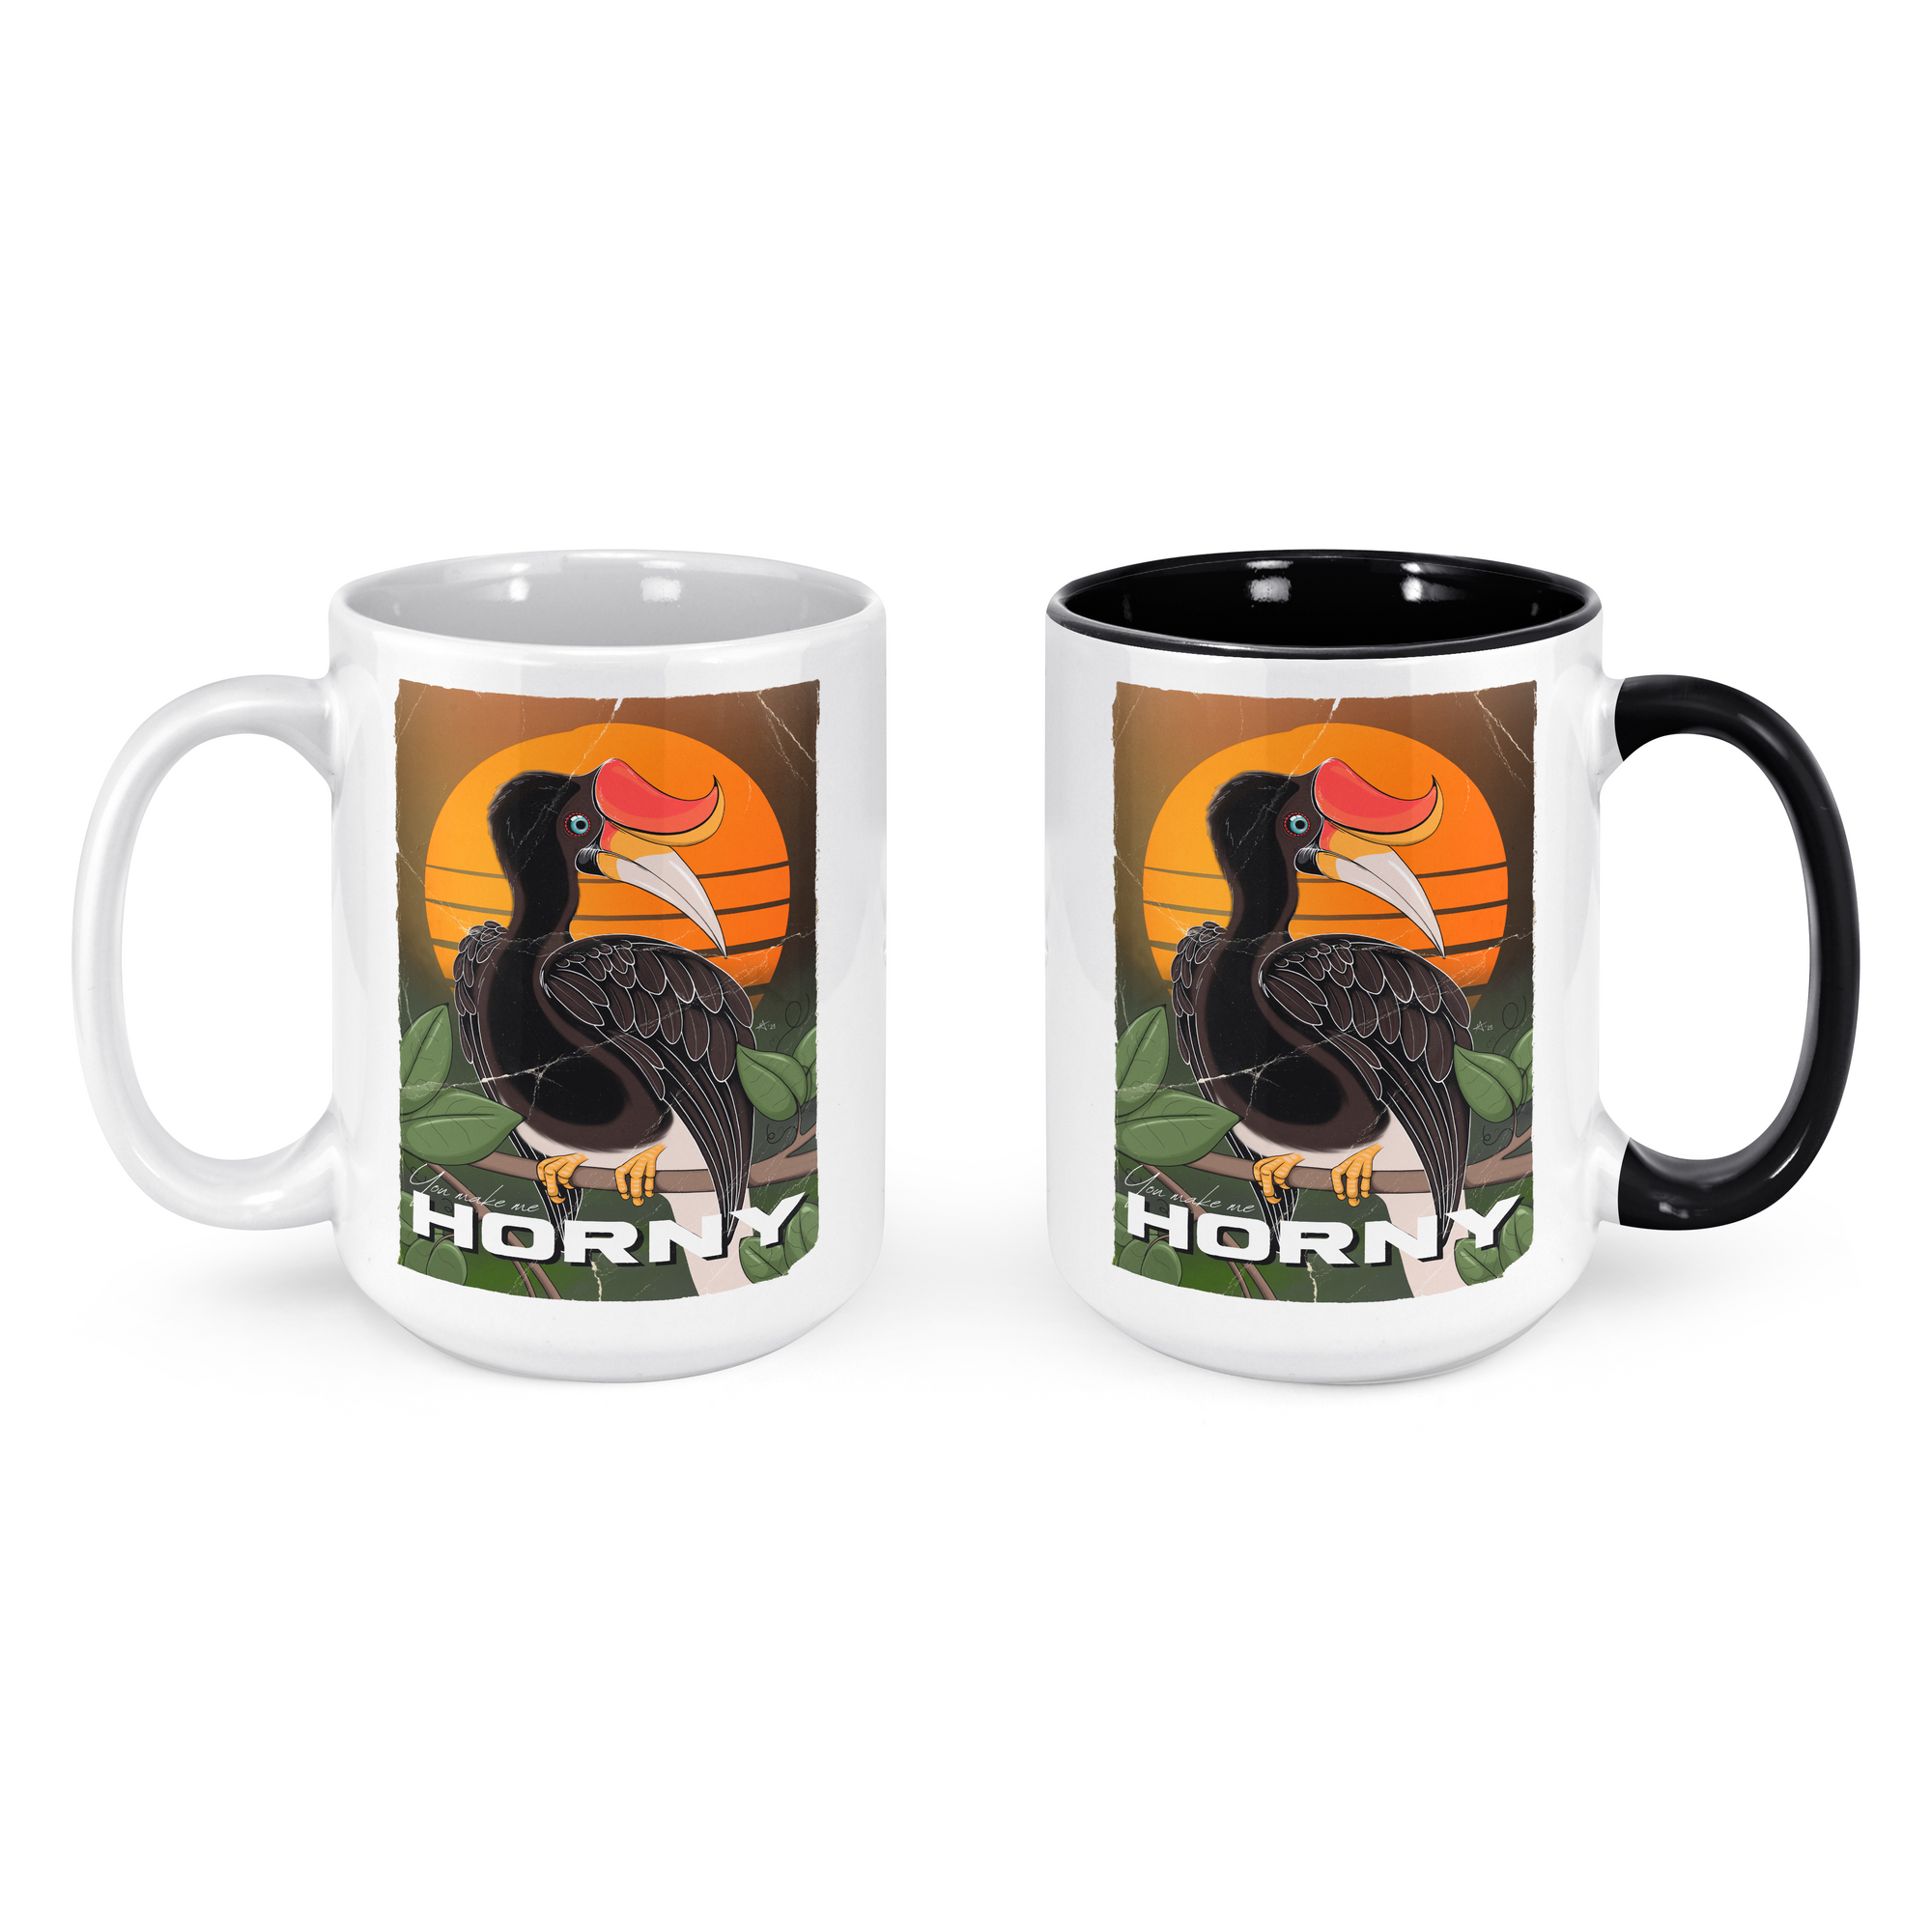 "You make me HORNY" - 15oz Coffee Mug